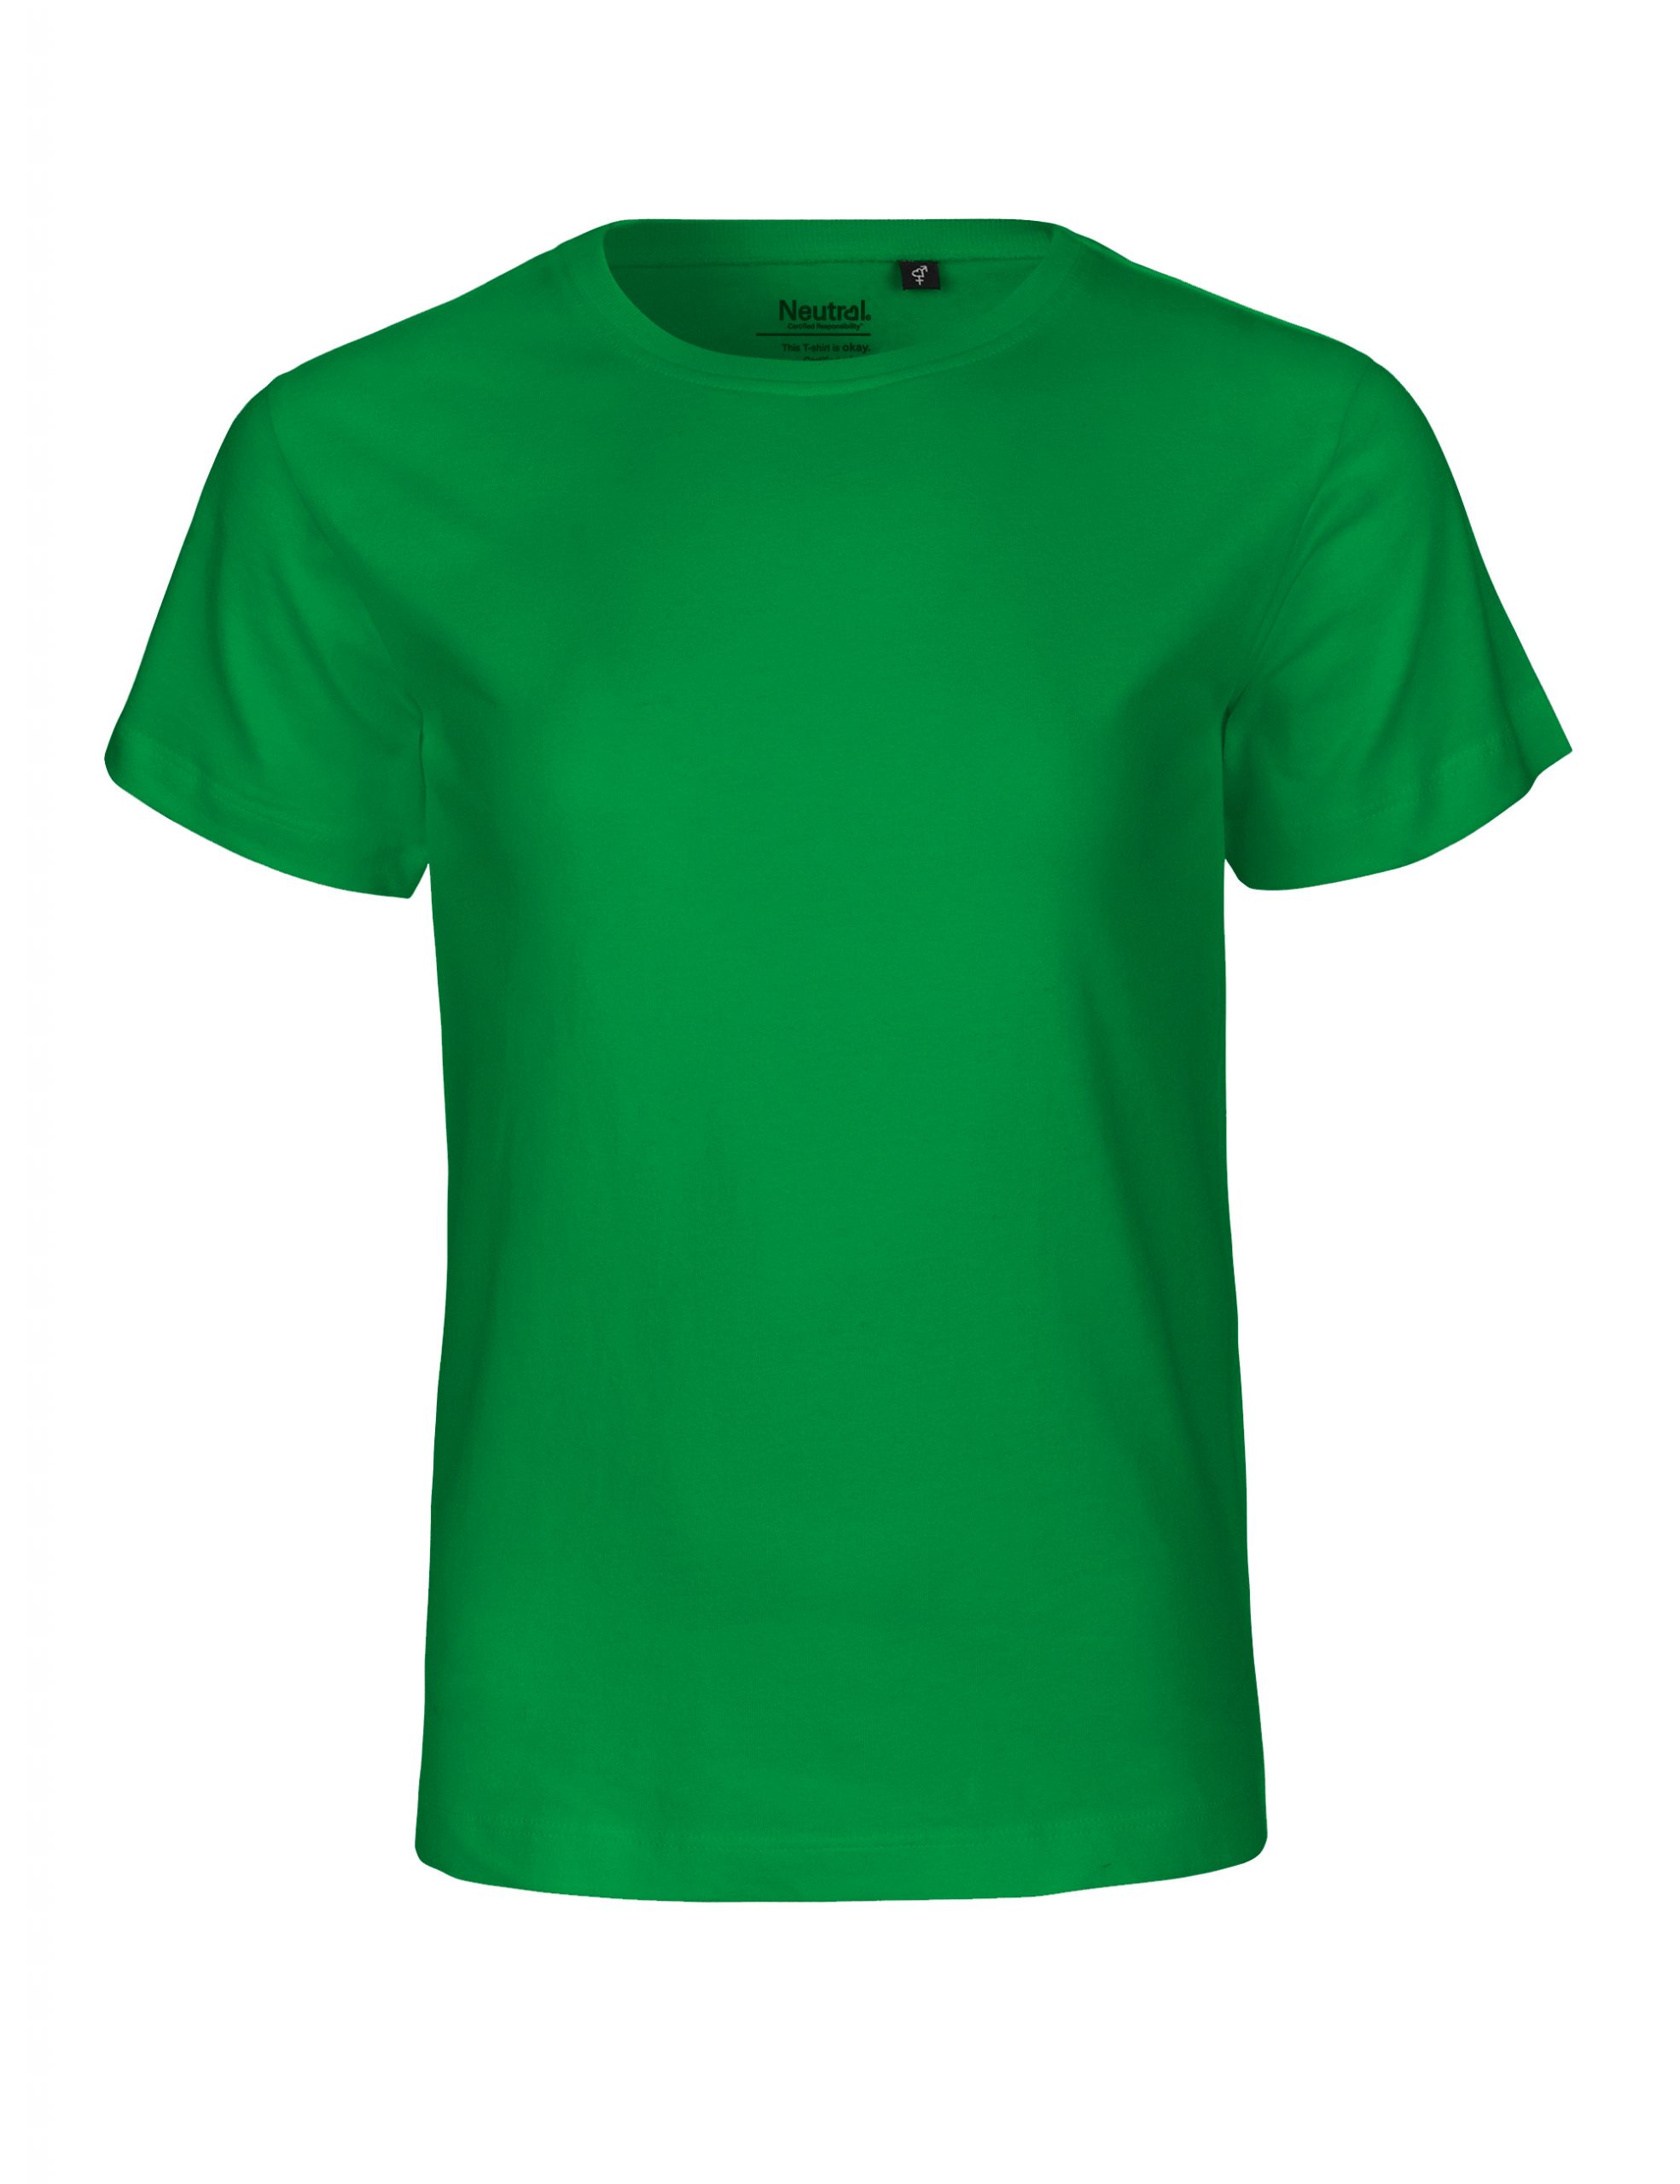 Neutral Kids T-shirt Green